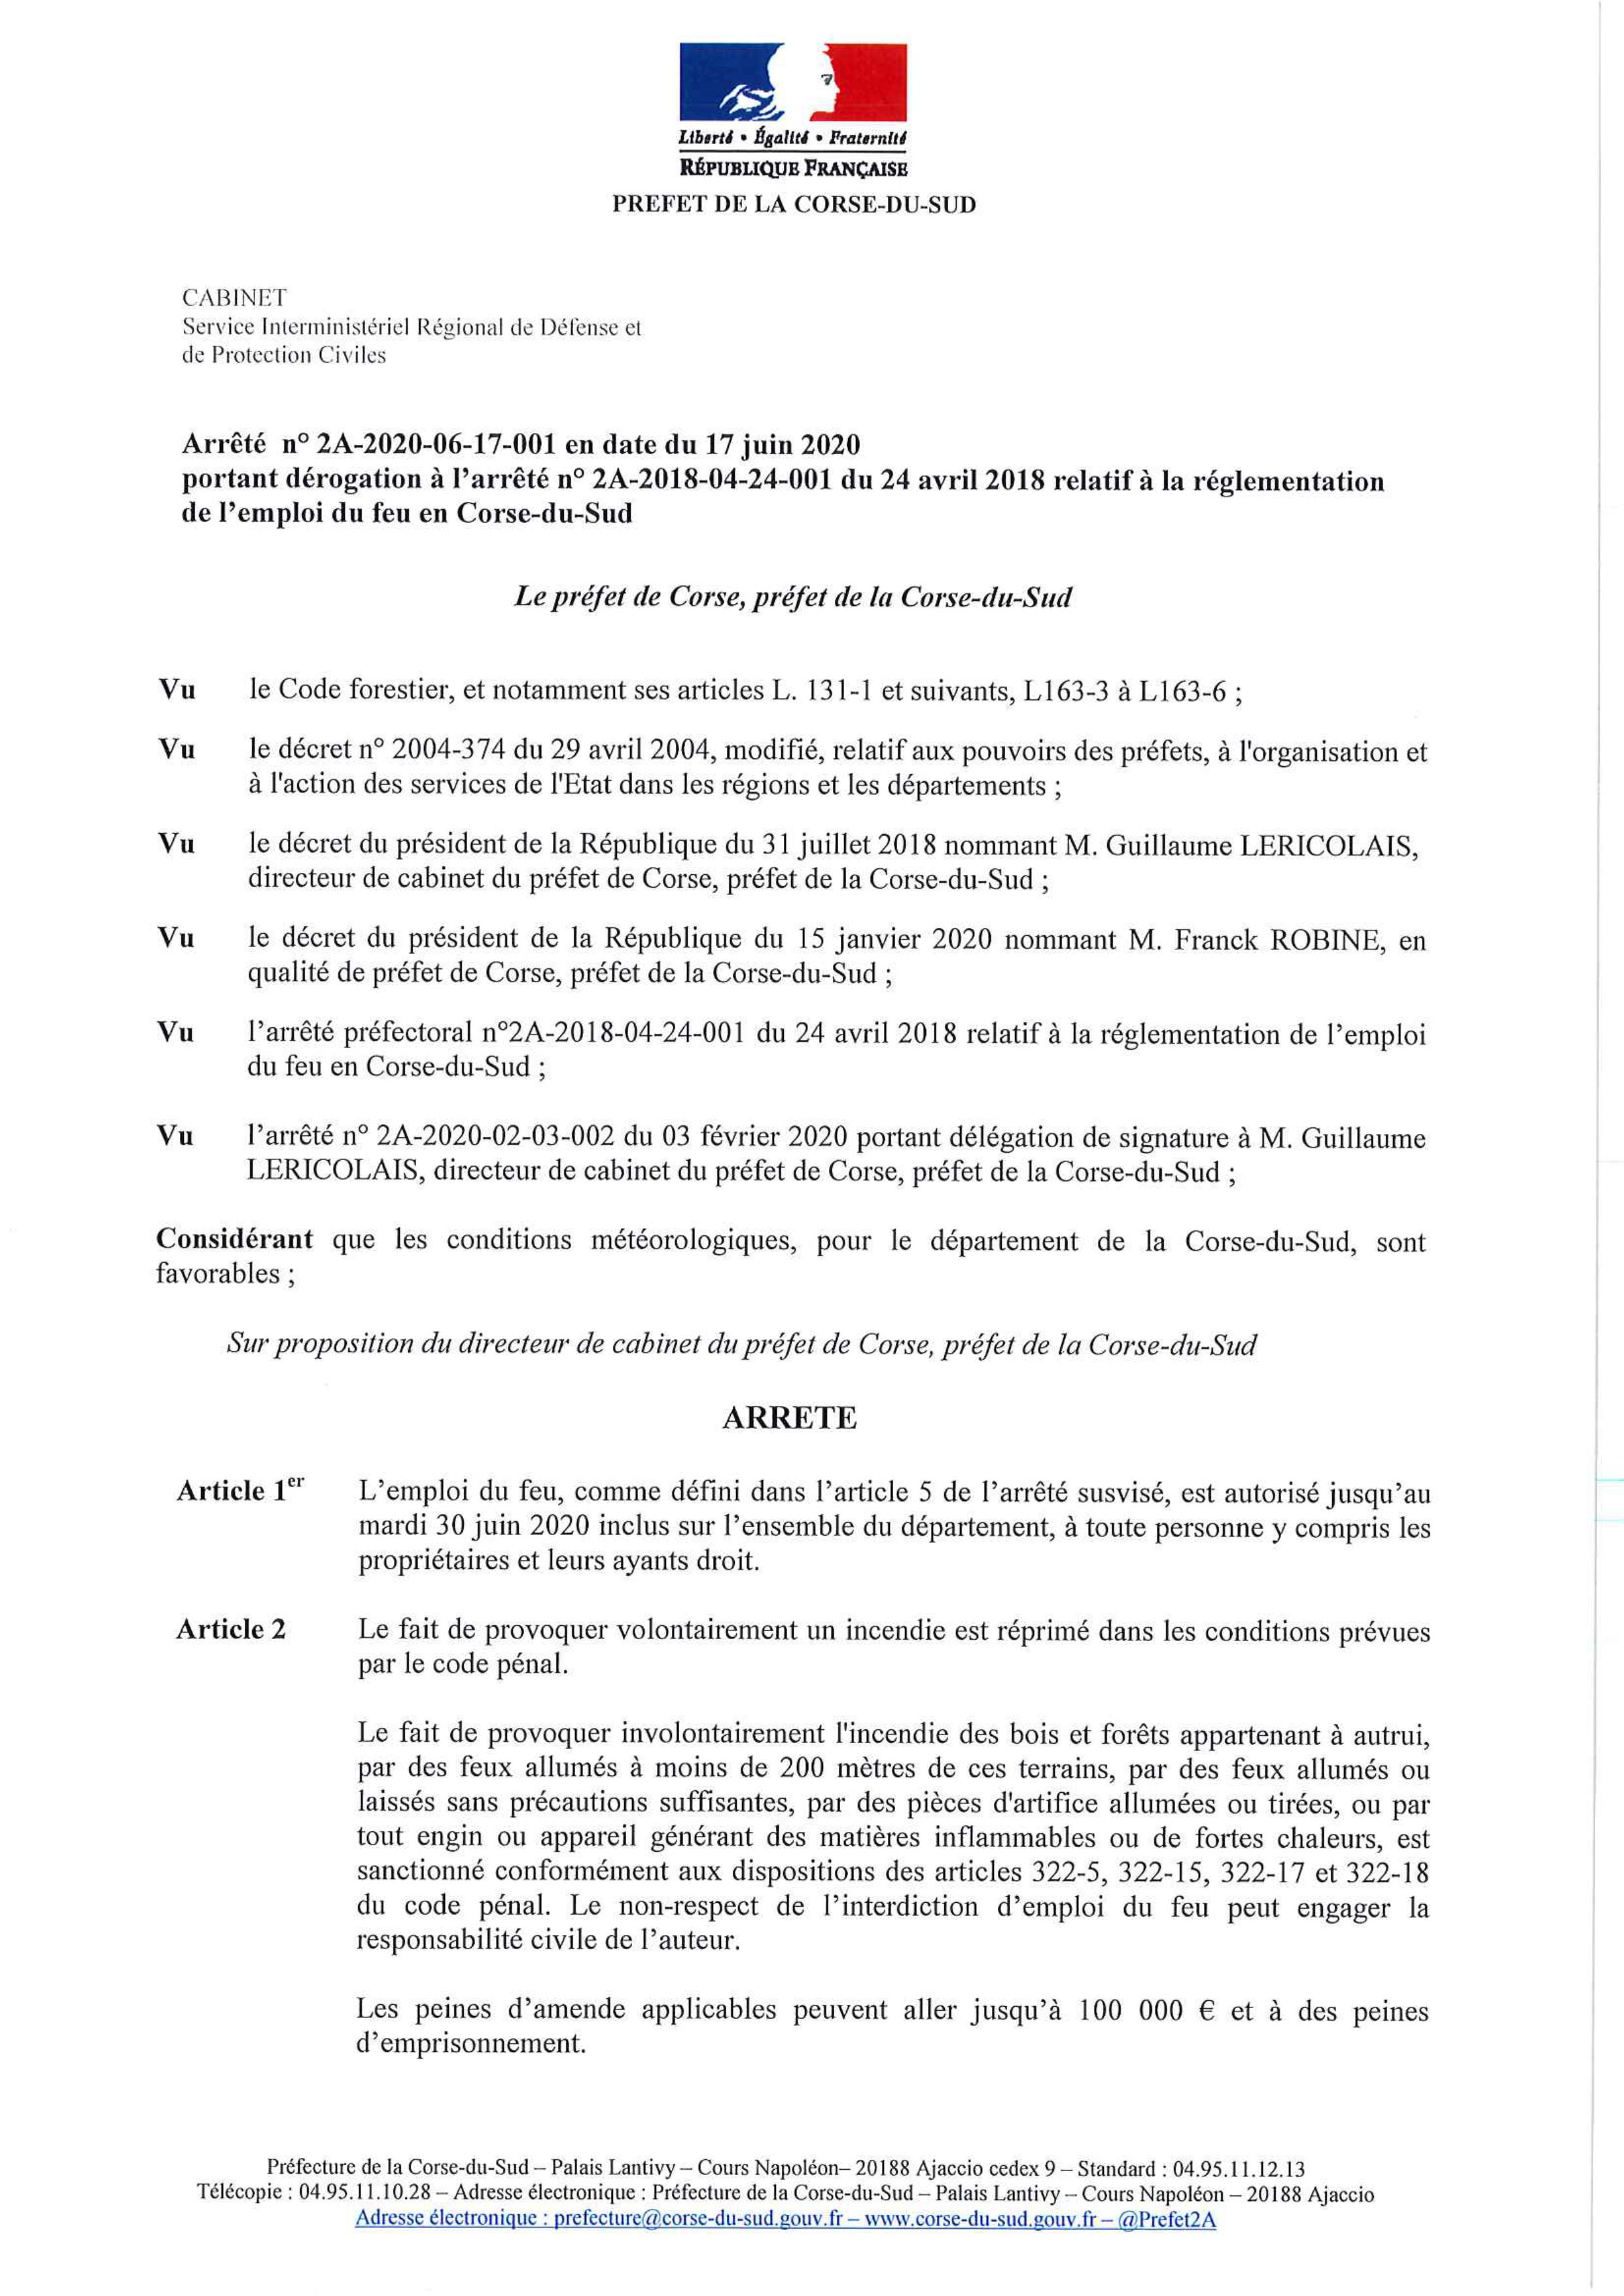 Arrêté préfectoral relatif à la réglementation de l'emploi du feu en Corse du Sud